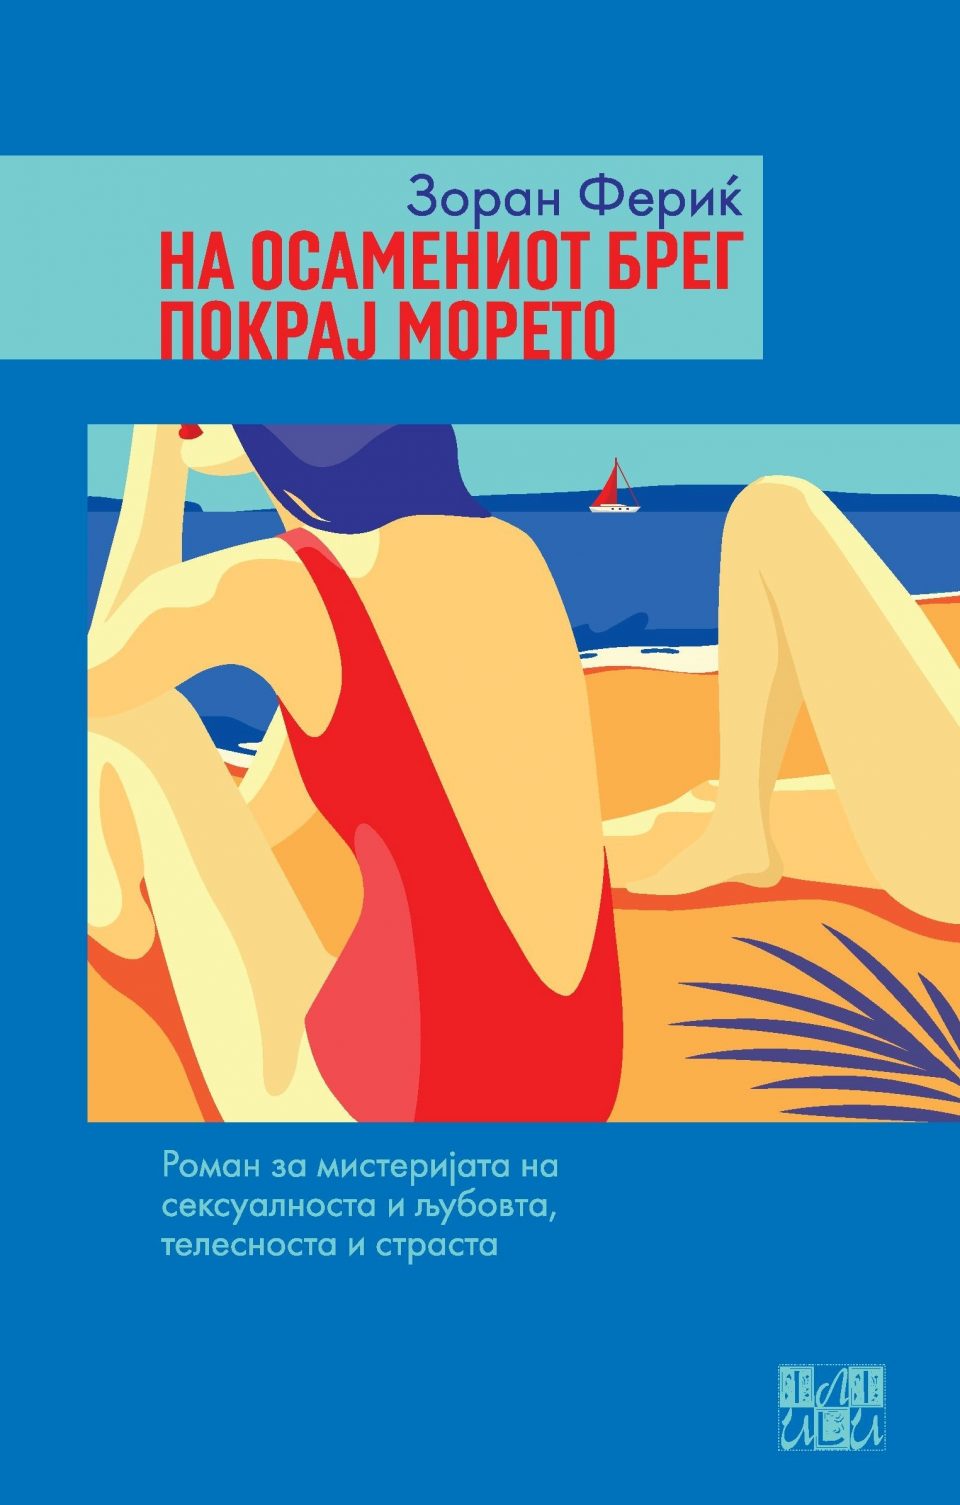 Објавен романот „На осамениот брег покрај морето“ од Зоран Фериќ